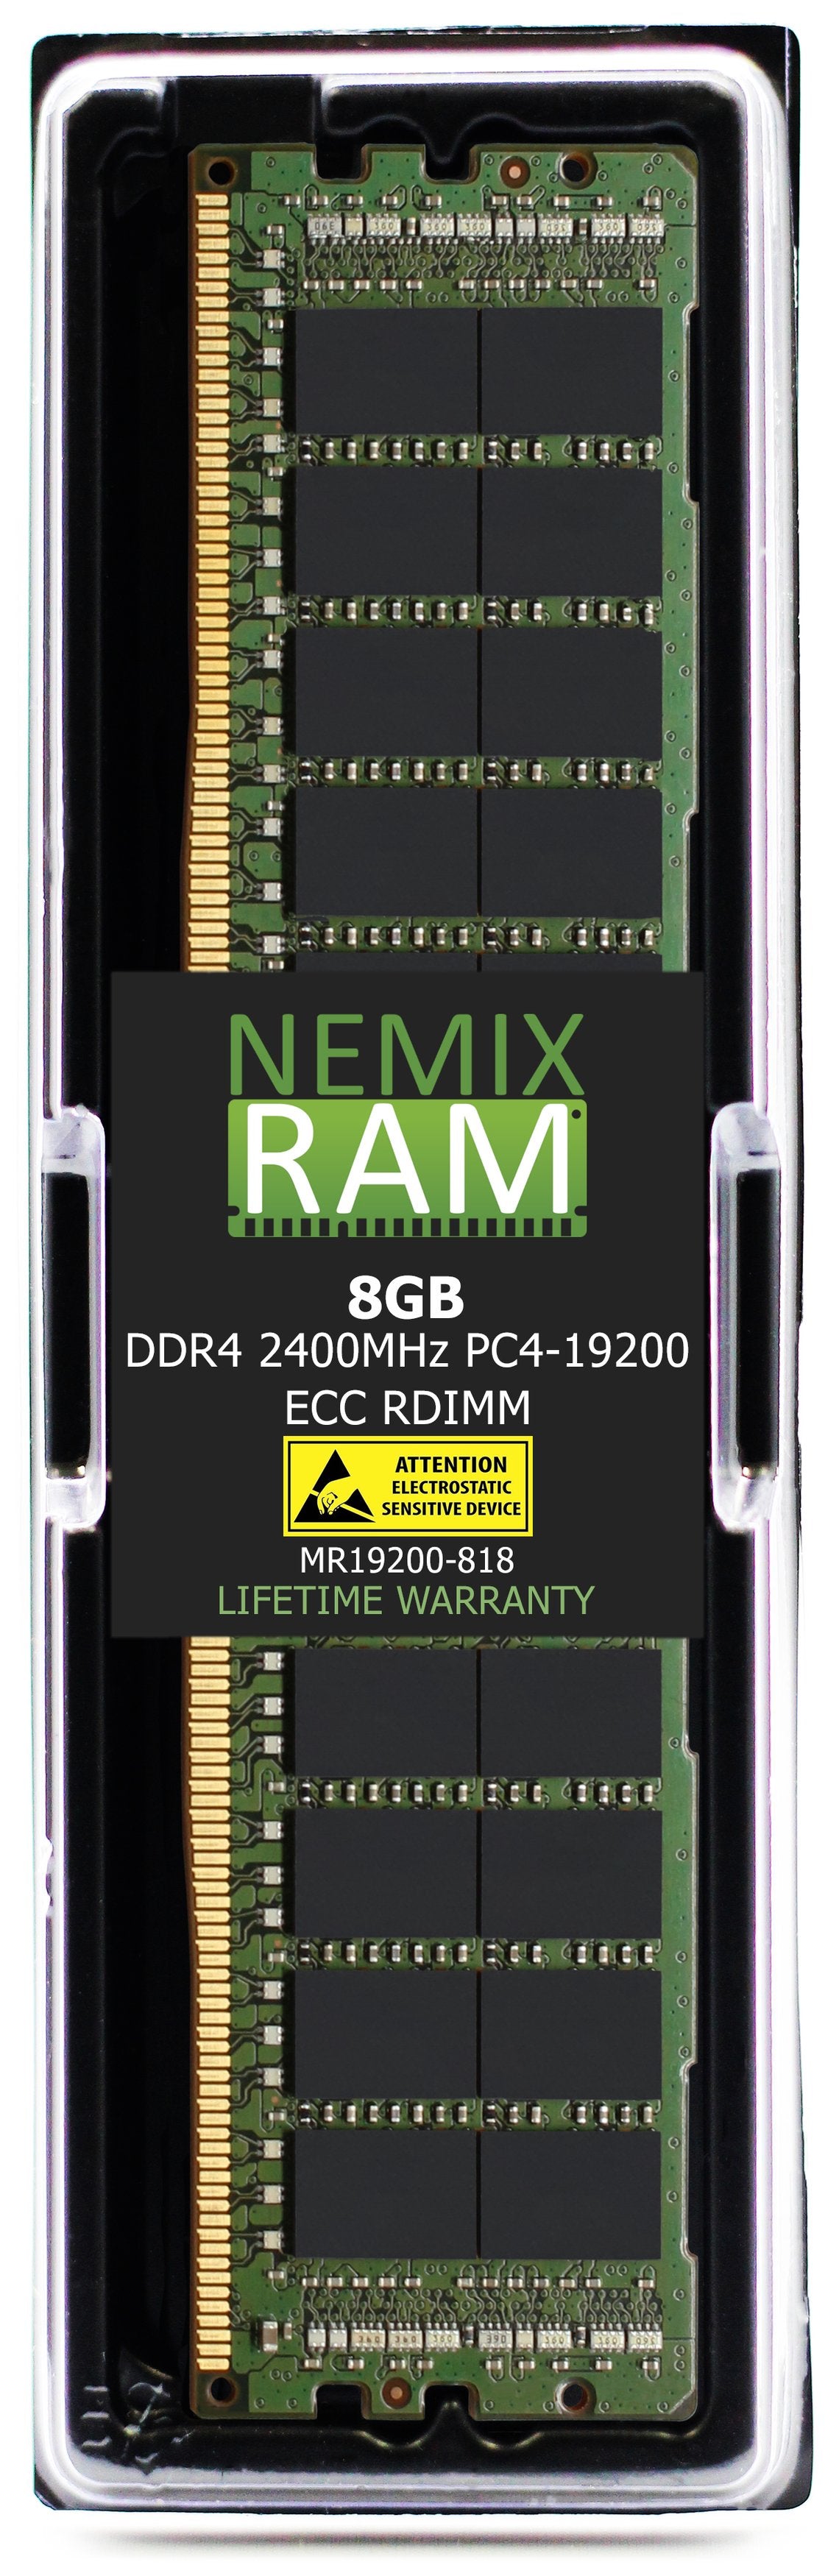 Hynix HMA81GR7CJR8N-UH 8GB DDR4 2400MHZ PC4-19200 RDIMM Compatible Memory Module